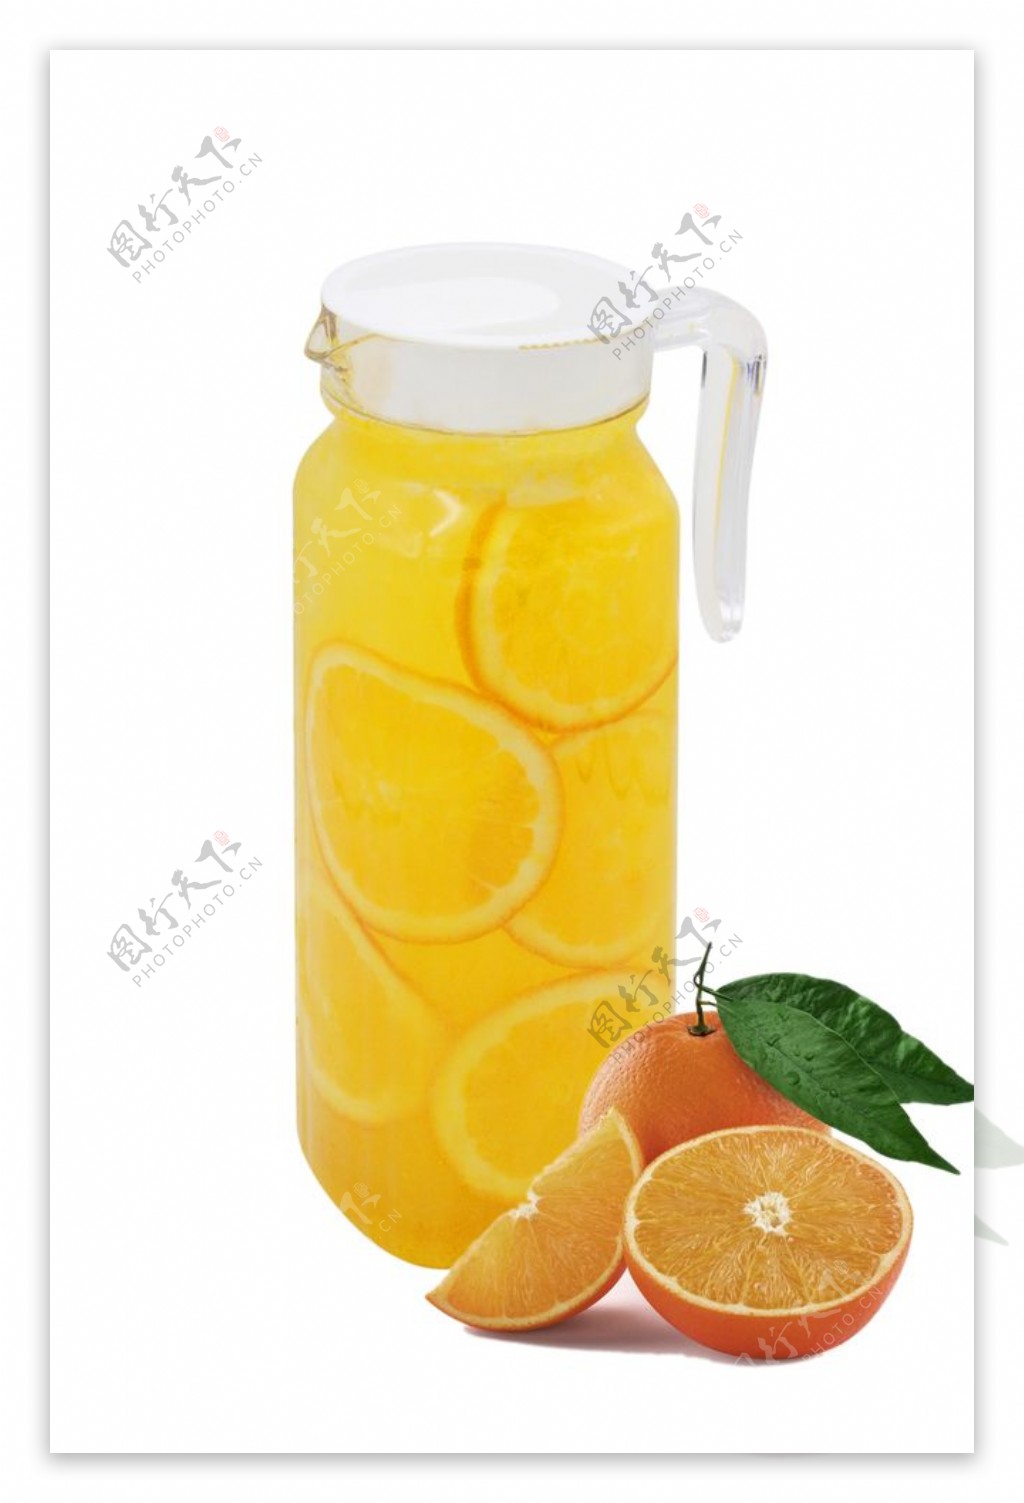 扎装橙汁